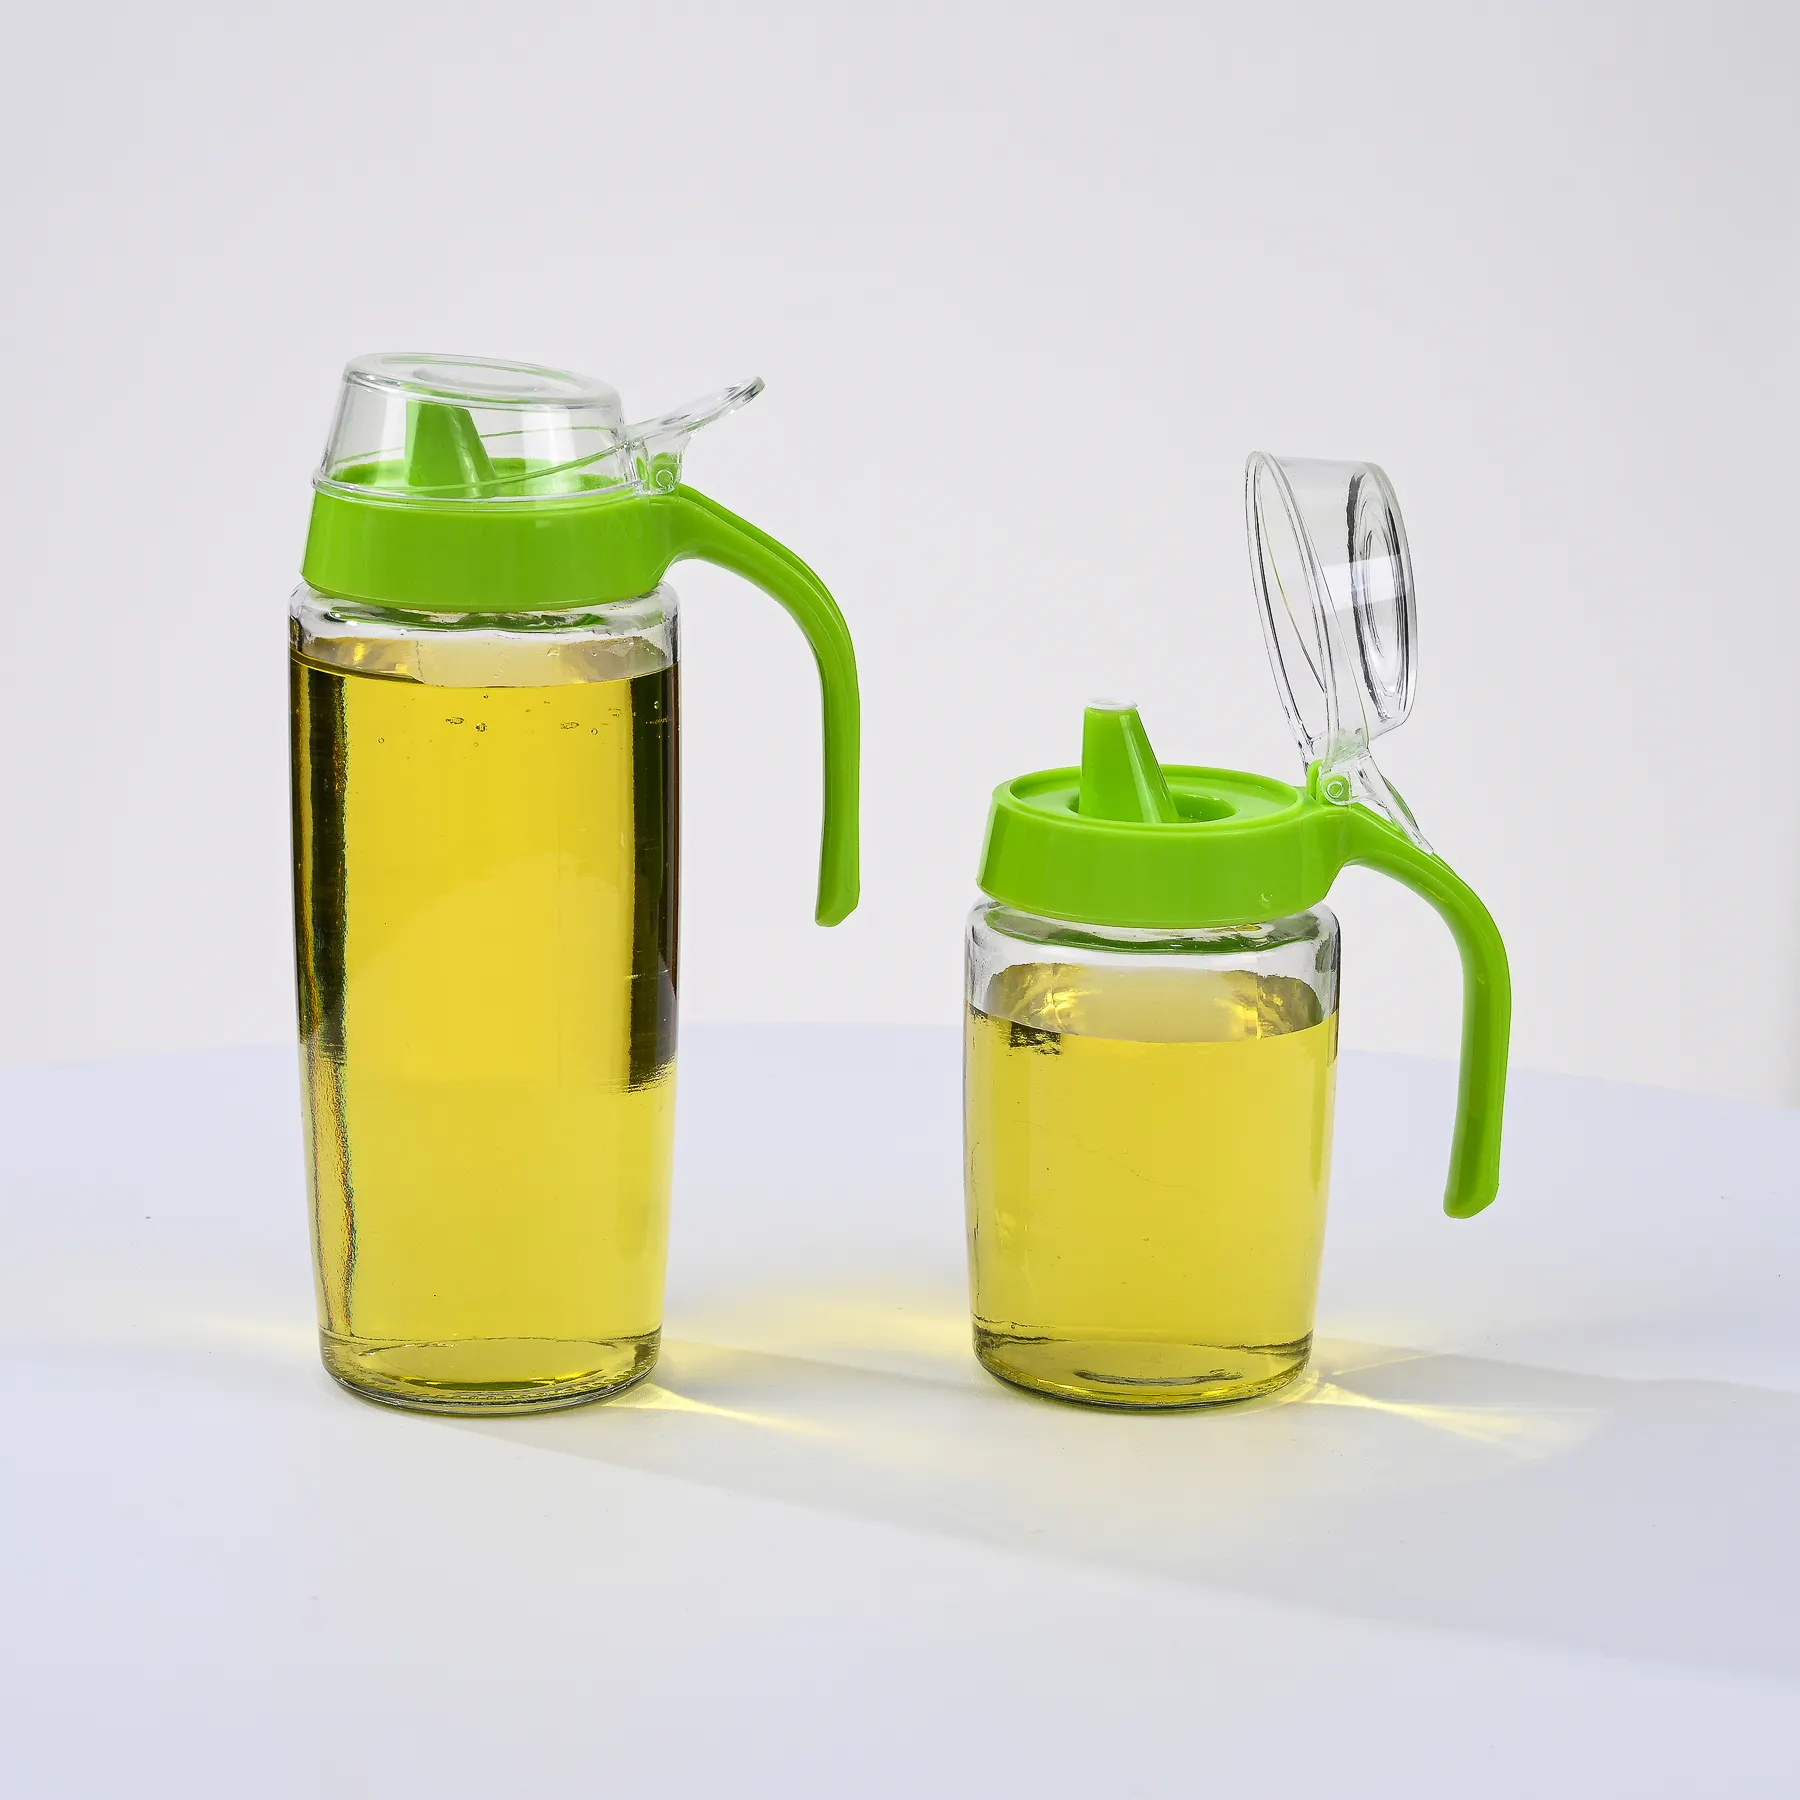 Miglior prezzo forniture da cucina per uso alimentare portatile 300ml 550ml di plastica olio aceto dispenser vetro olio commestibile bombolette Spray bottiglie